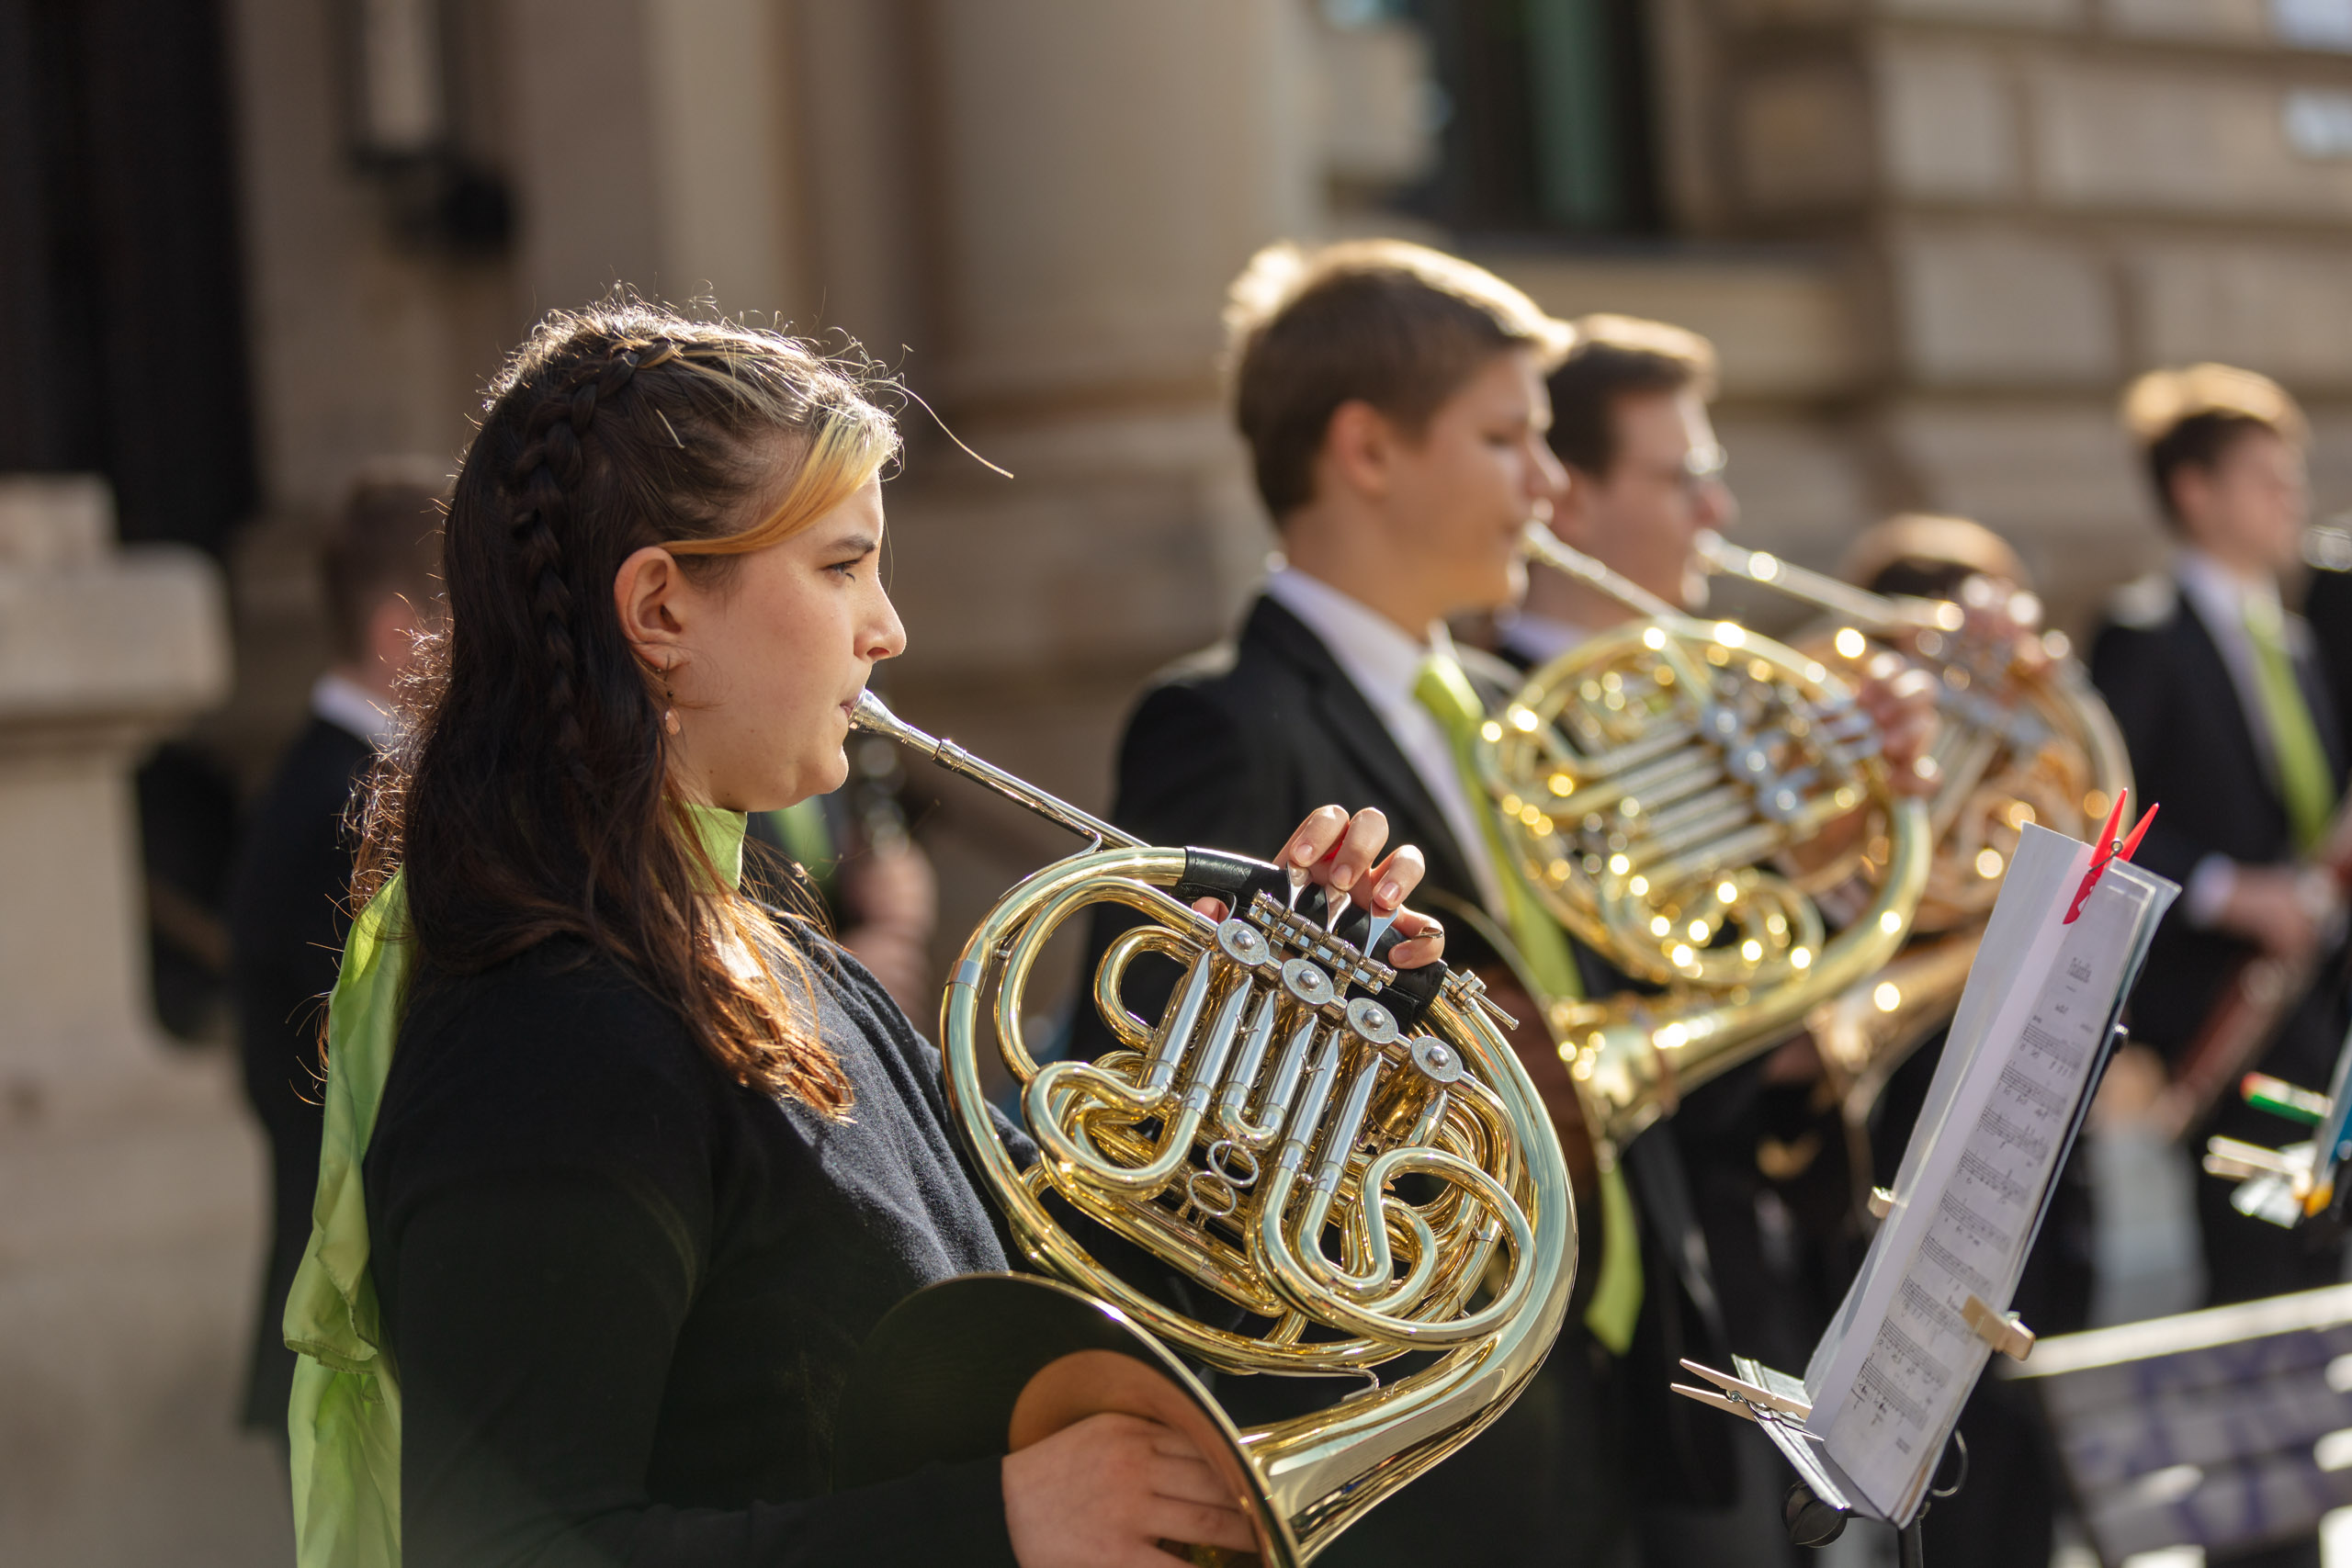 Mitglieder des Jugendsinfonieorchster, die draußen vor der Musikschule Waldhorn spielen, im Vordergrund eine junge Frau mit grünem Tuch, die Horn spielt